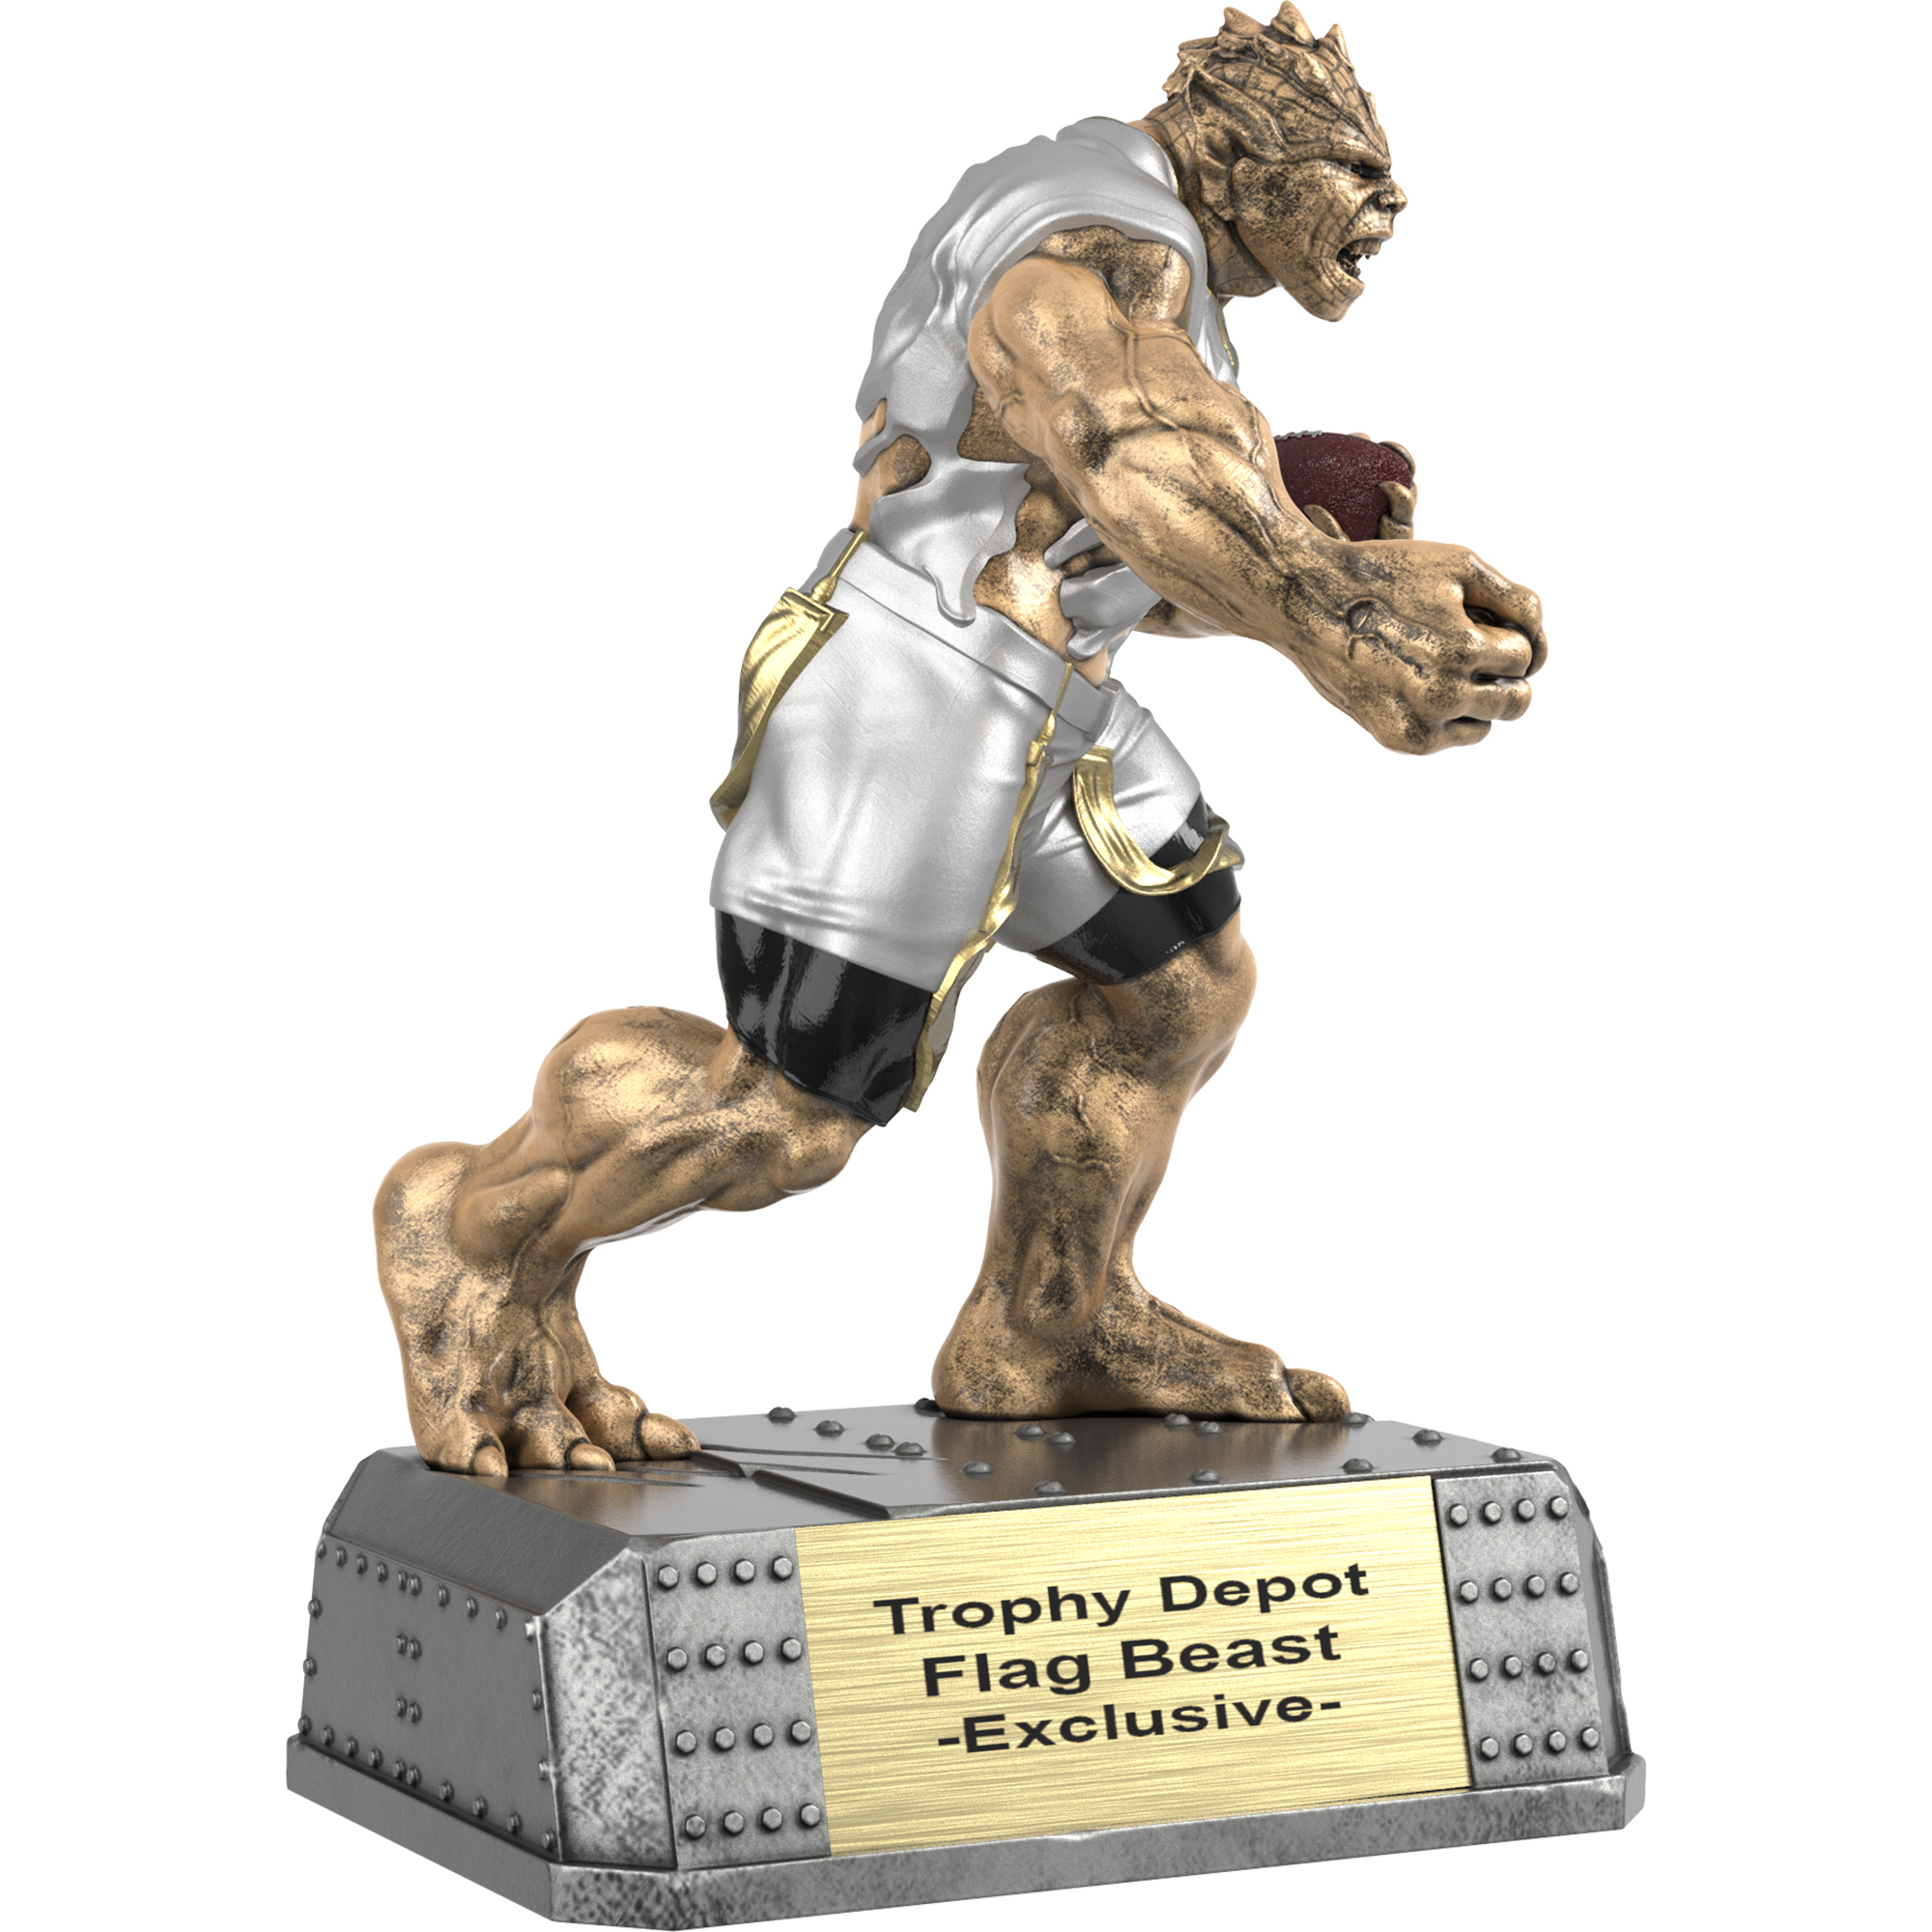 Flag Football Beast, Monster Sculpture Trophy - 6.75 inch